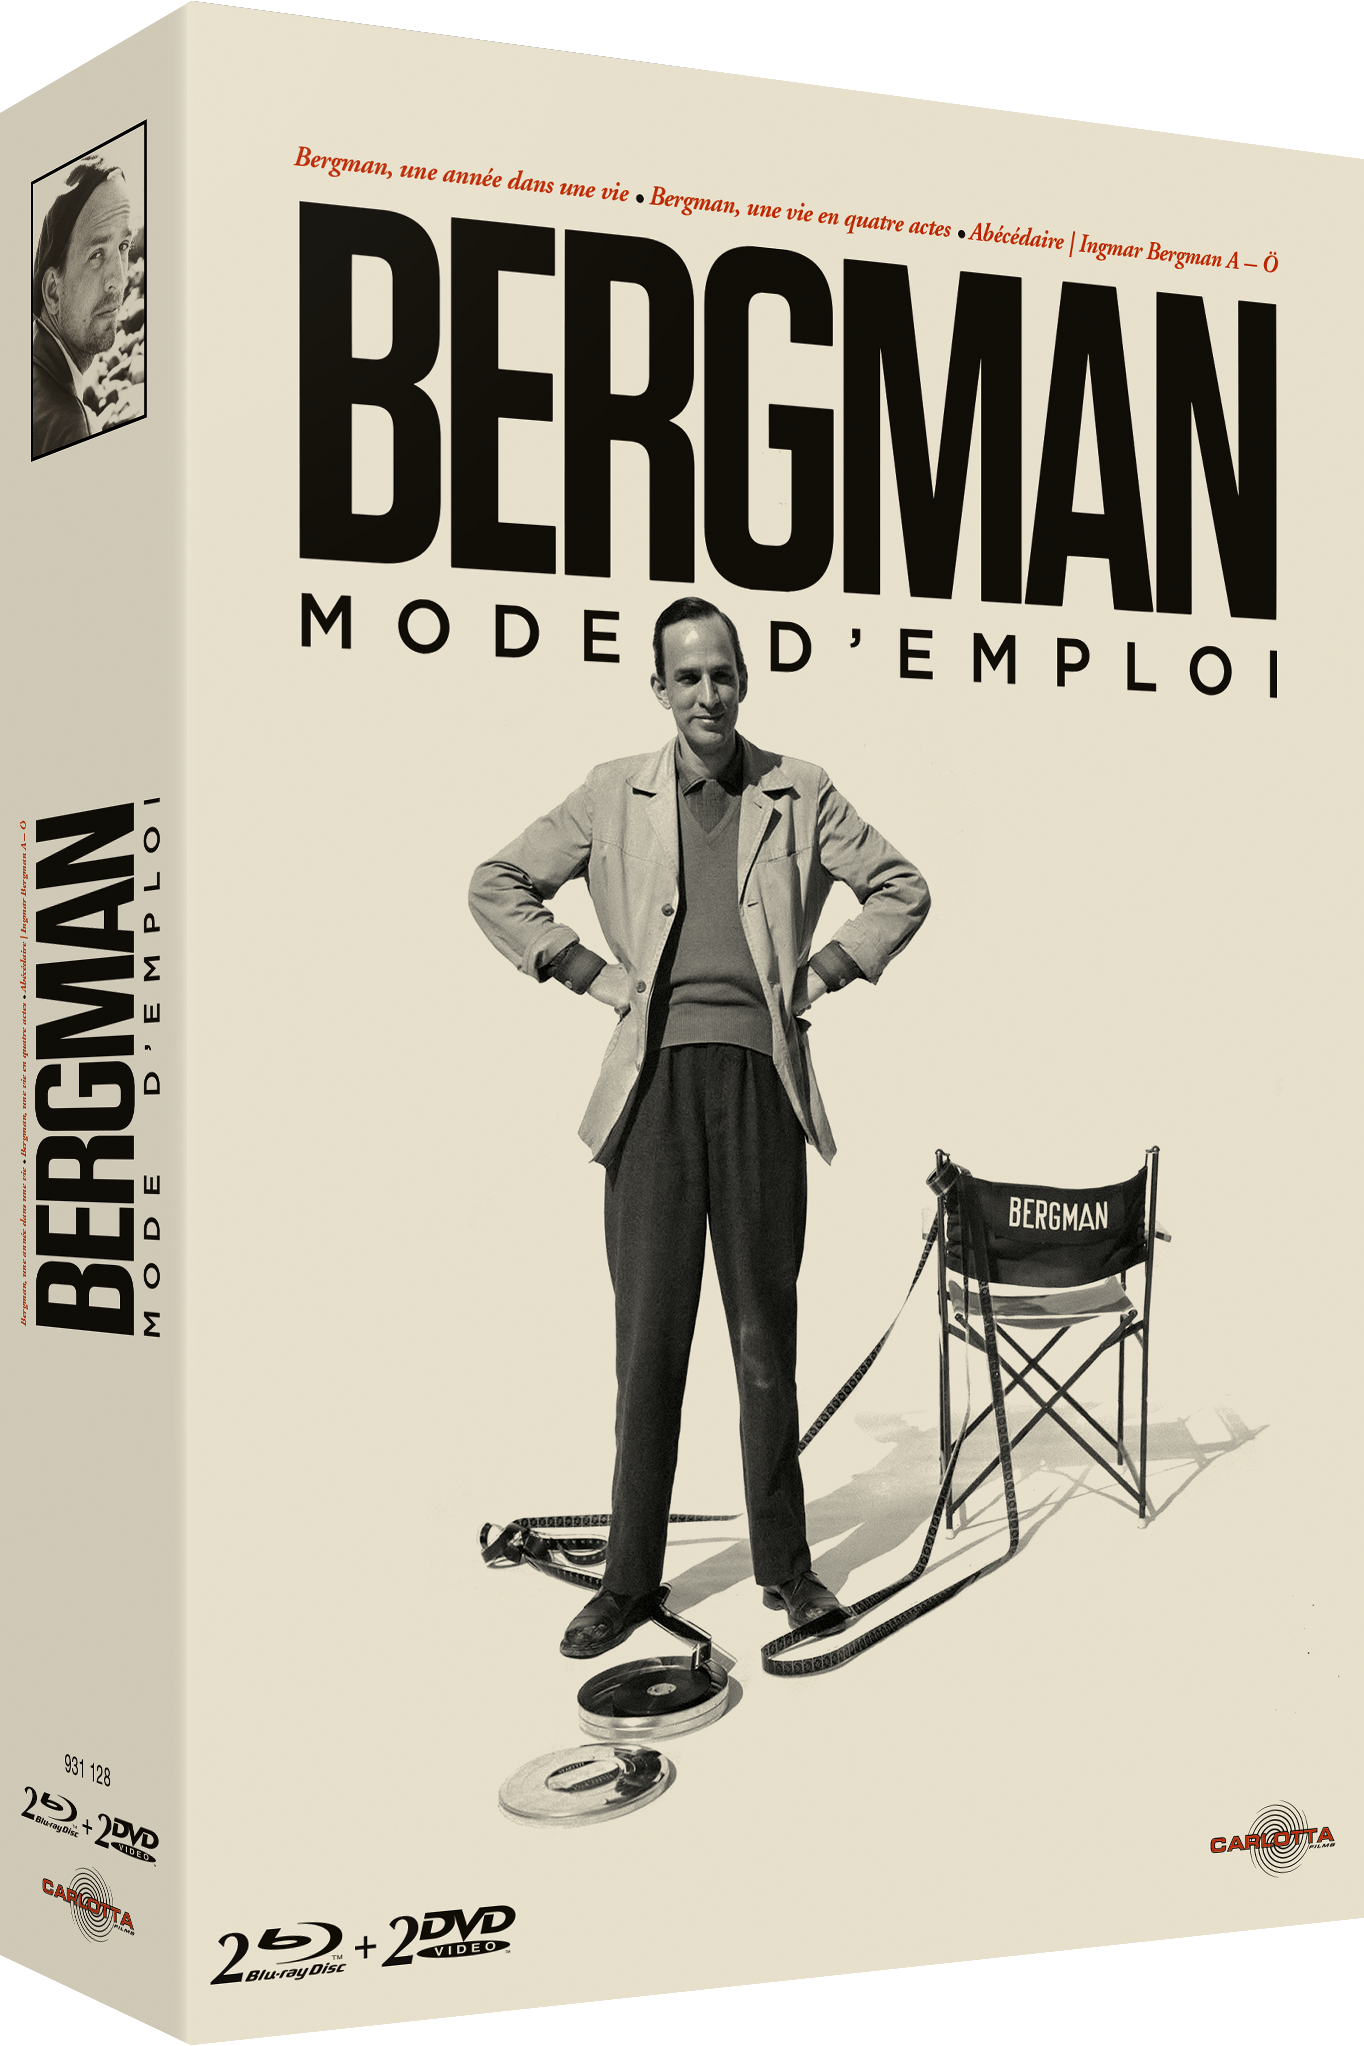 Bergman, mode d'emploi - Coffret Collector Limité - CARLOTTA FILMS - La Boutique